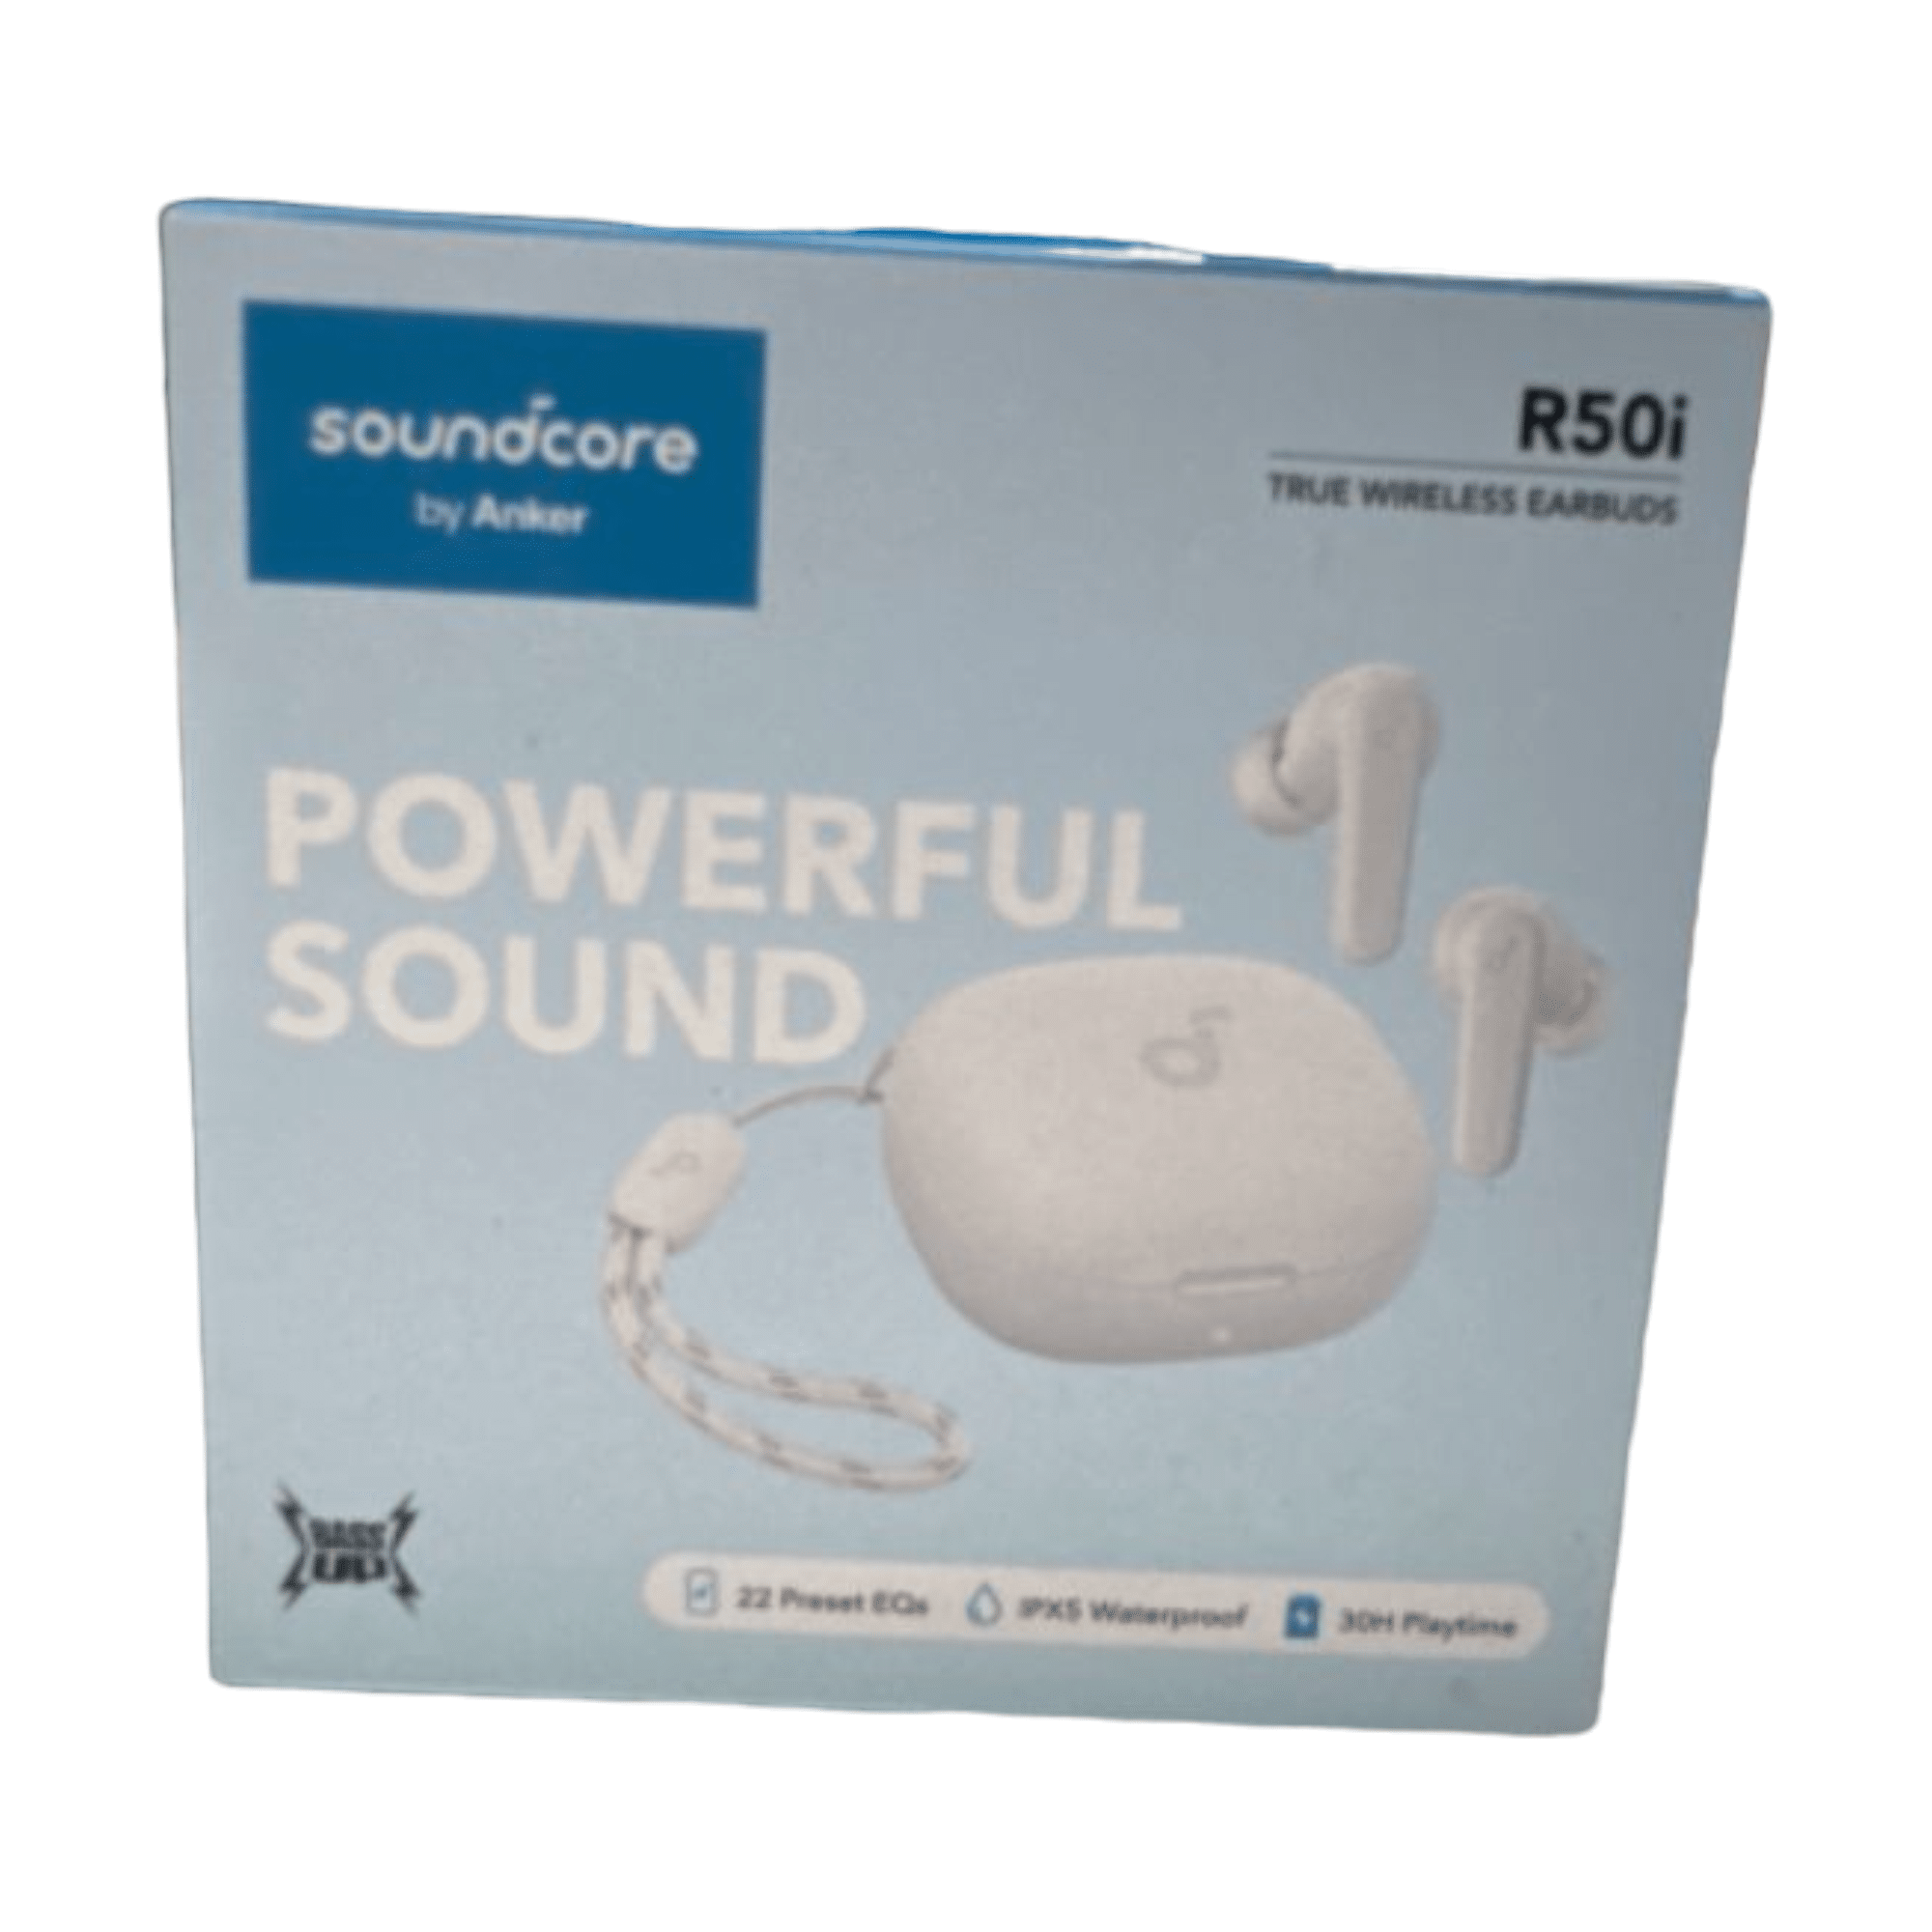 אוזניות Soundcore R50i